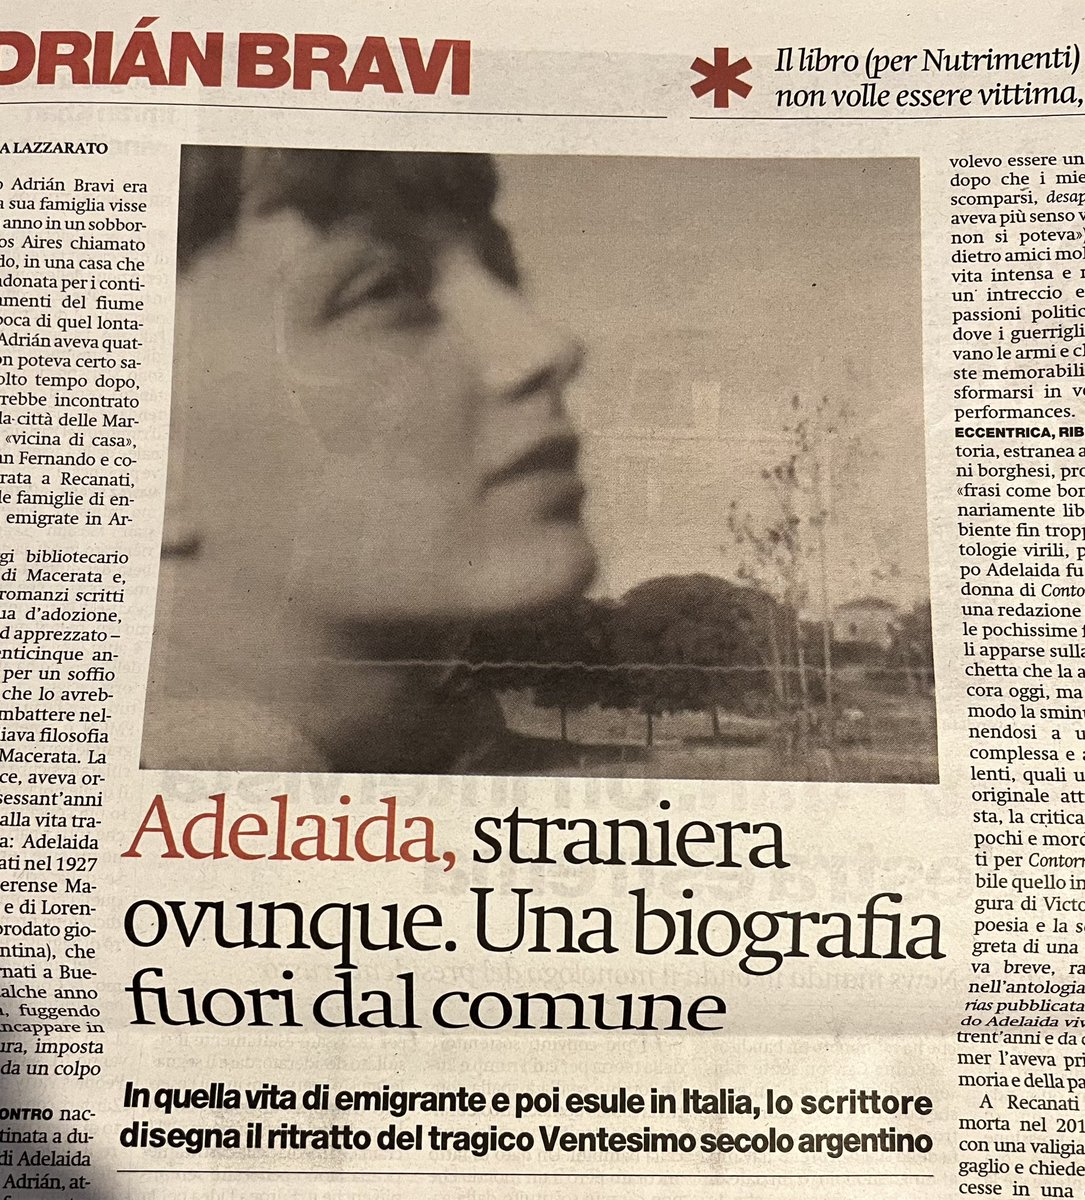 Su @ilmanifesto di oggi anche una paginata di Francesca Lazzarato dedicata al bellissimo libro di @AdrianBravi1 “Adelaida” uscito ieri per @Nutrimenti